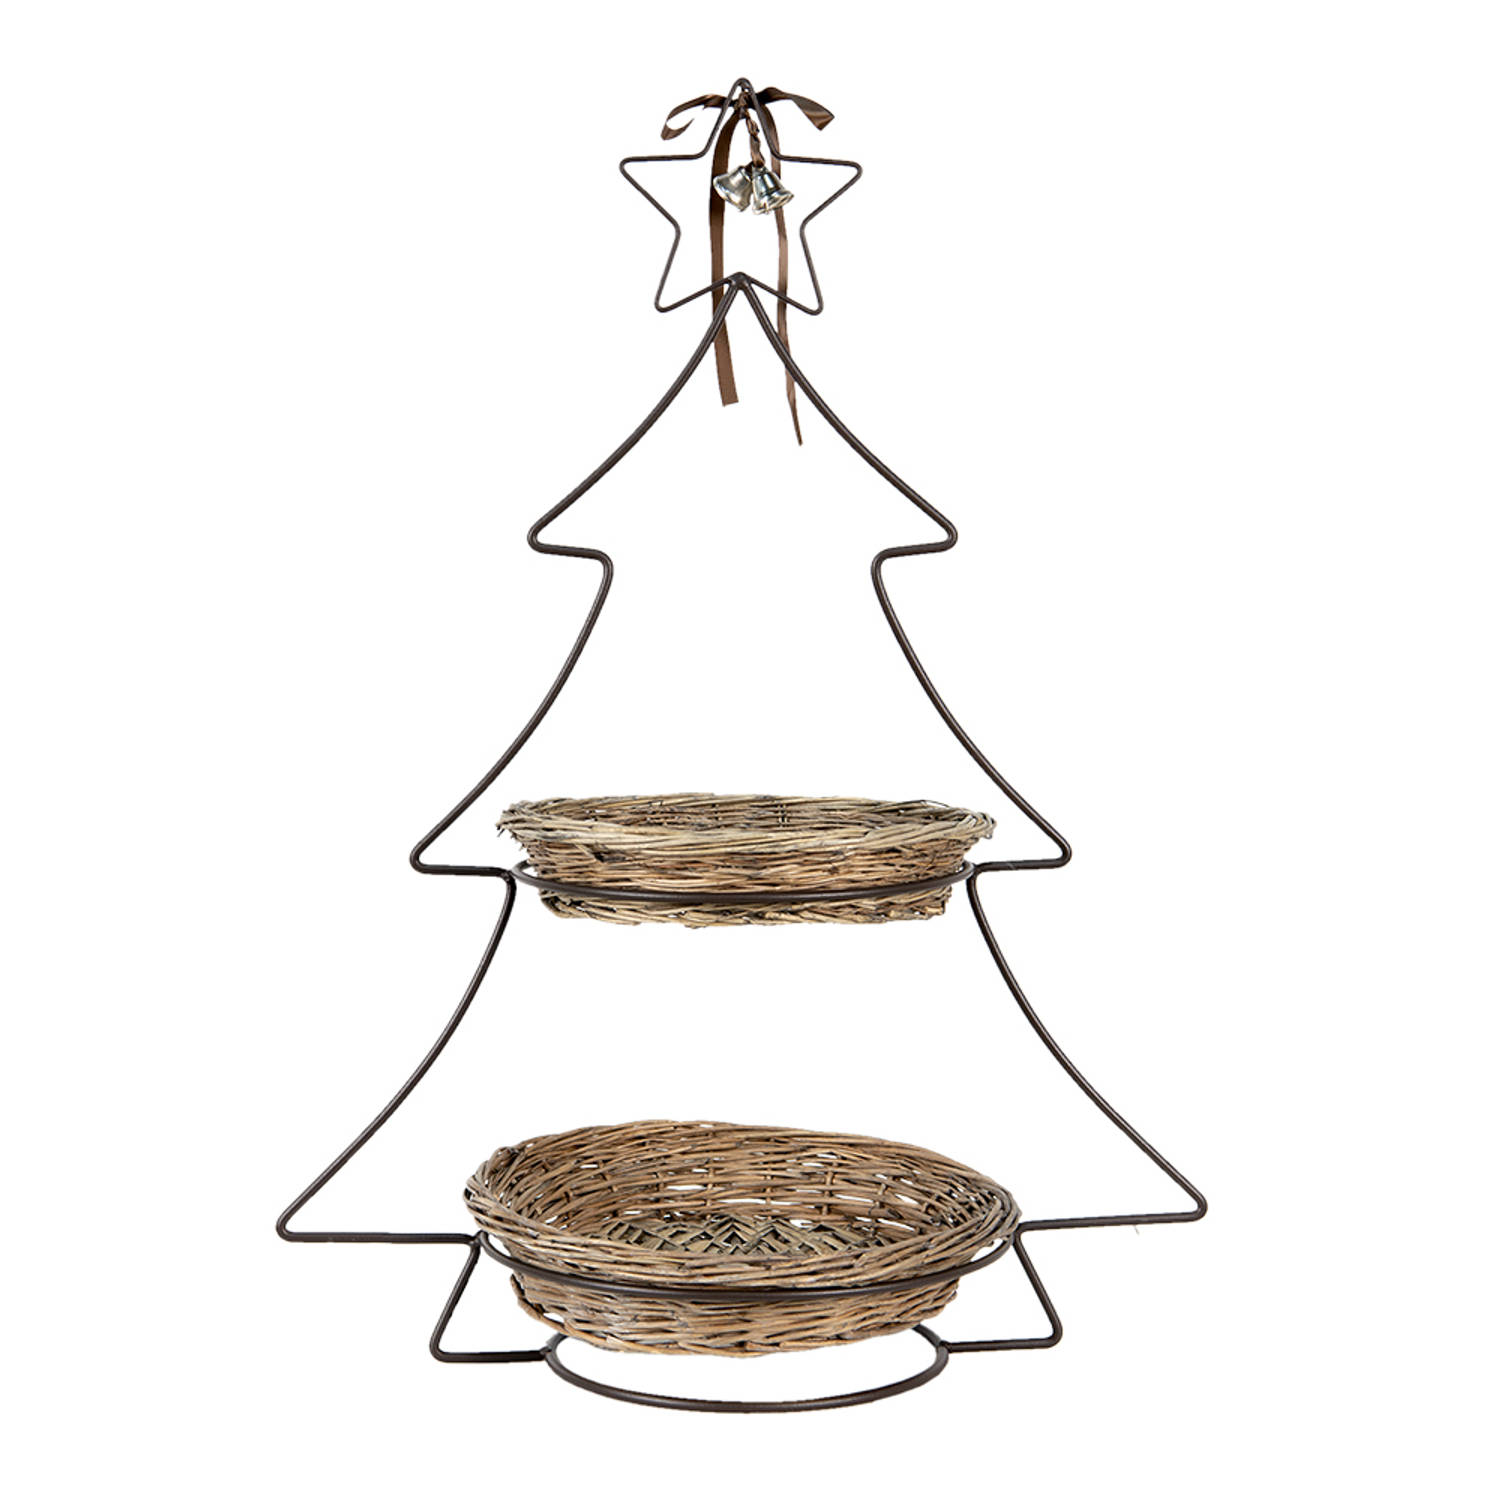 HAES DECO - Etagère 2 laags - formaat 45x28x63 cm - kleur Bruin - van Metaal - vorm Kerstboom - Taartplateau, Serveerschaal, Fruitschaal